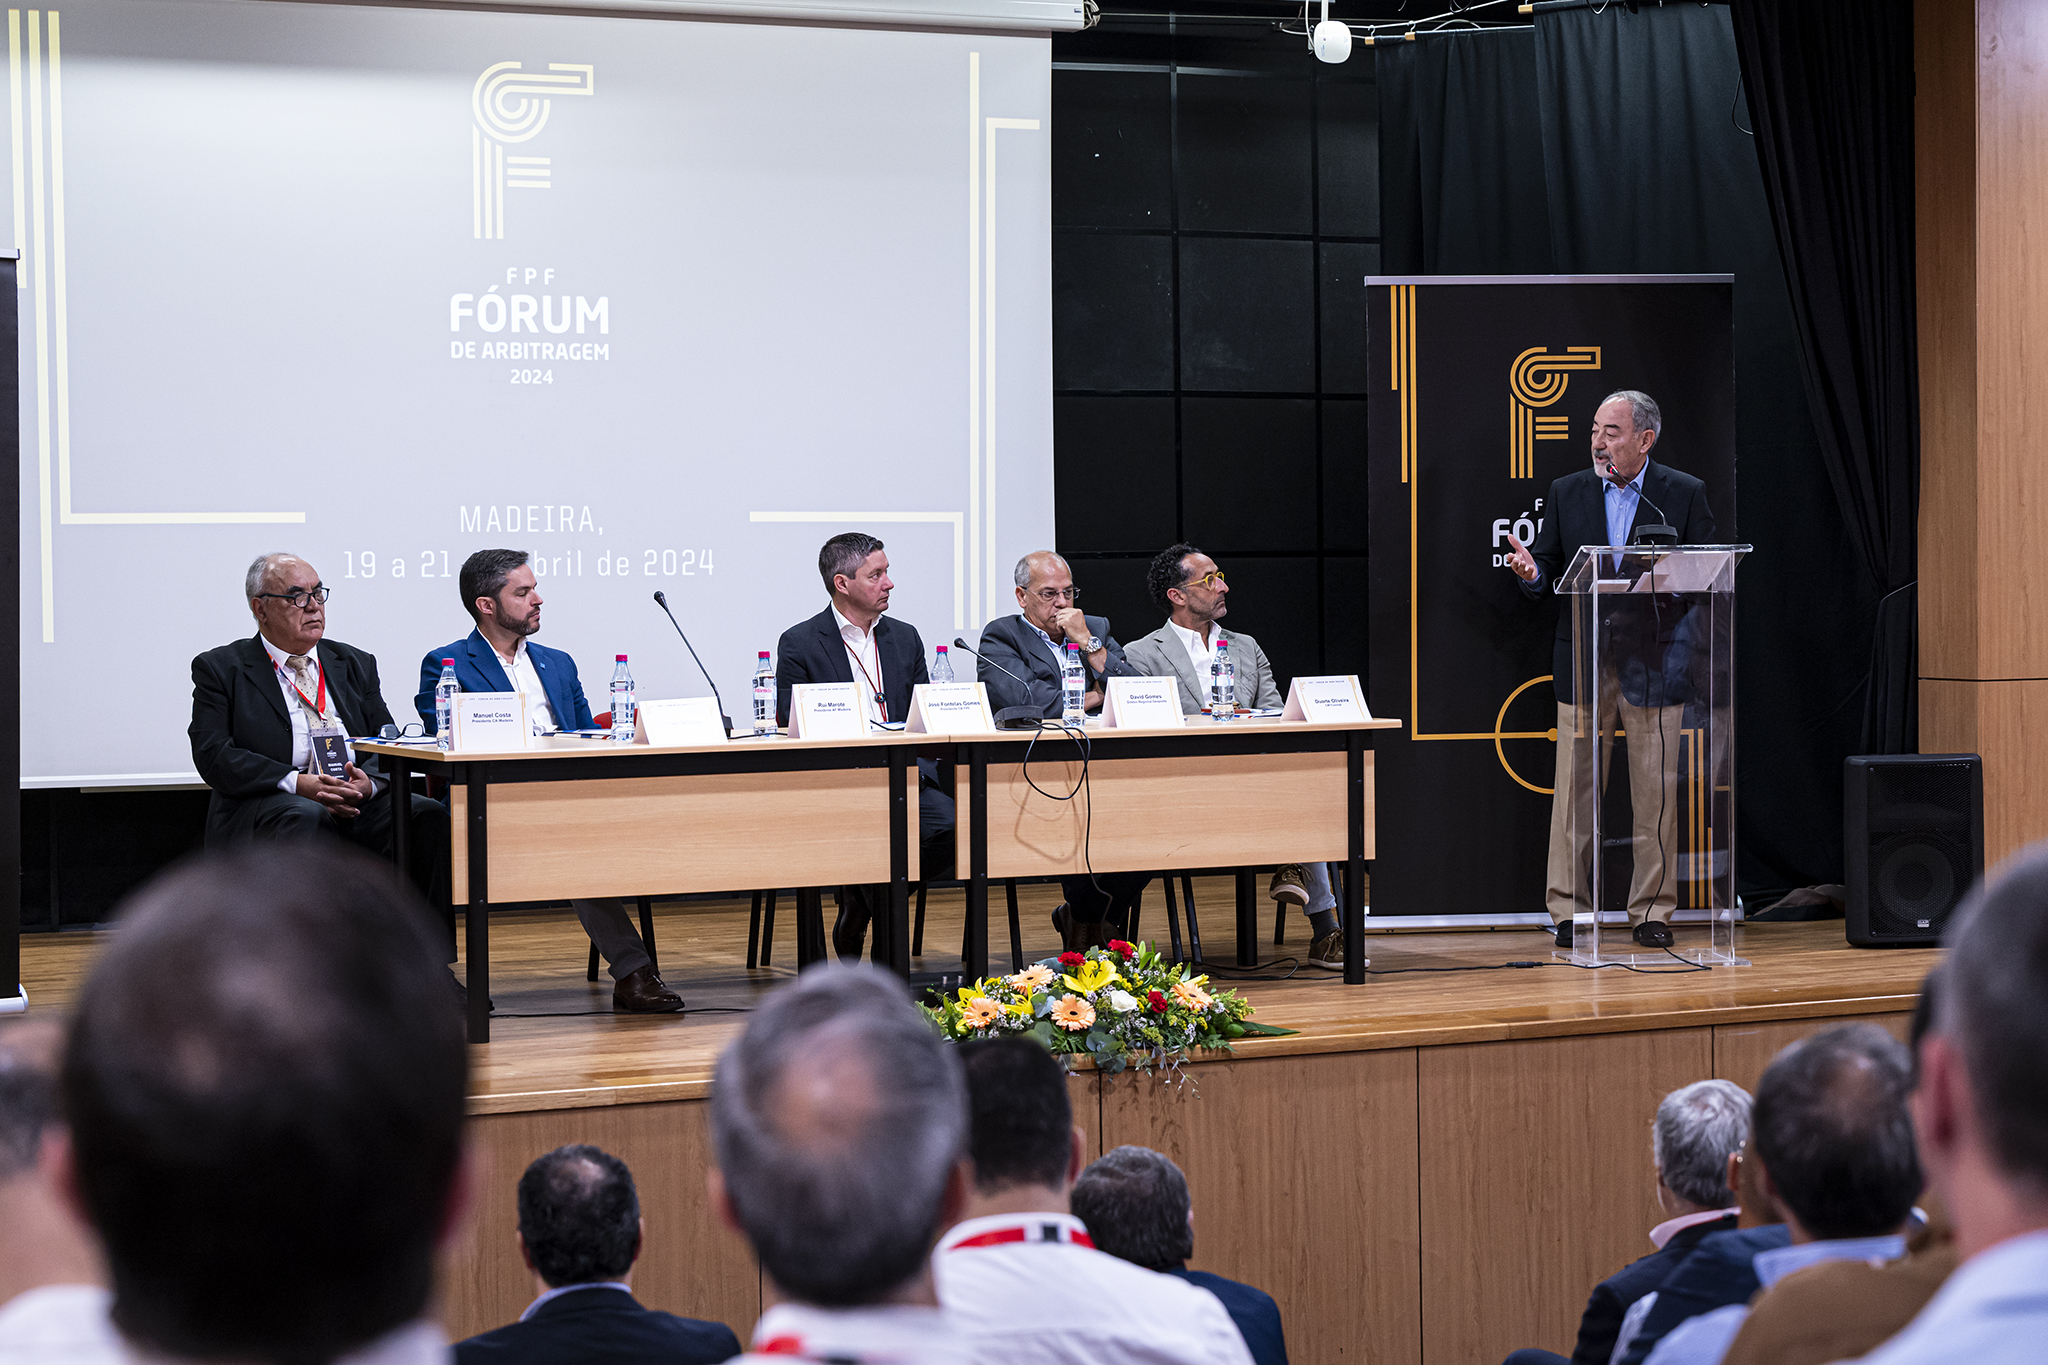 XXI Fórum de Arbitragem: trabalhos iniciados no Funchal